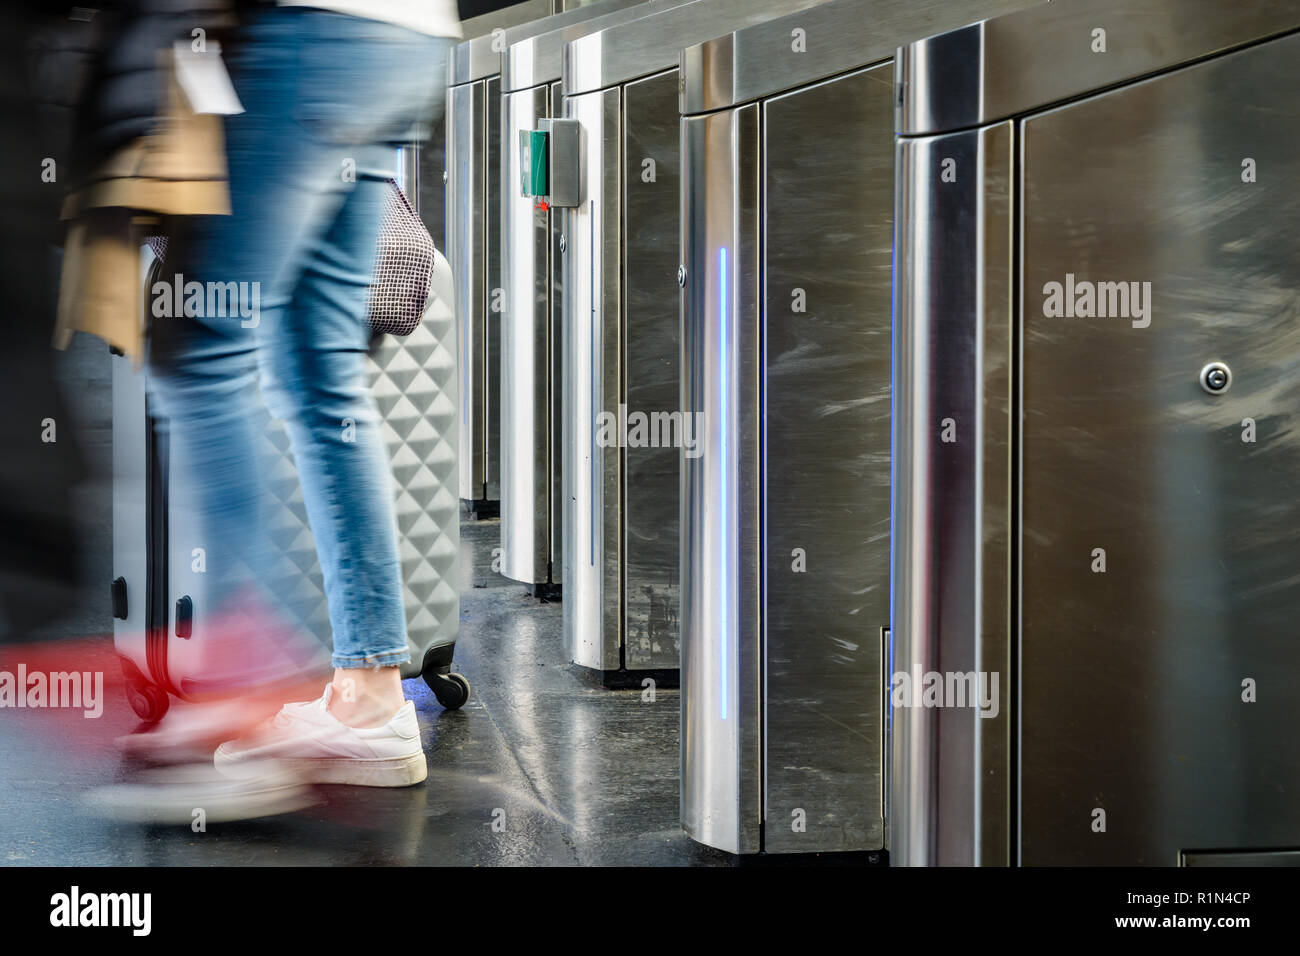 Vue latérale d'une femme avec une valise roulant en passant par des portes en acier inoxydable d'un ticket de transport public station in Paris with motion blur Banque D'Images